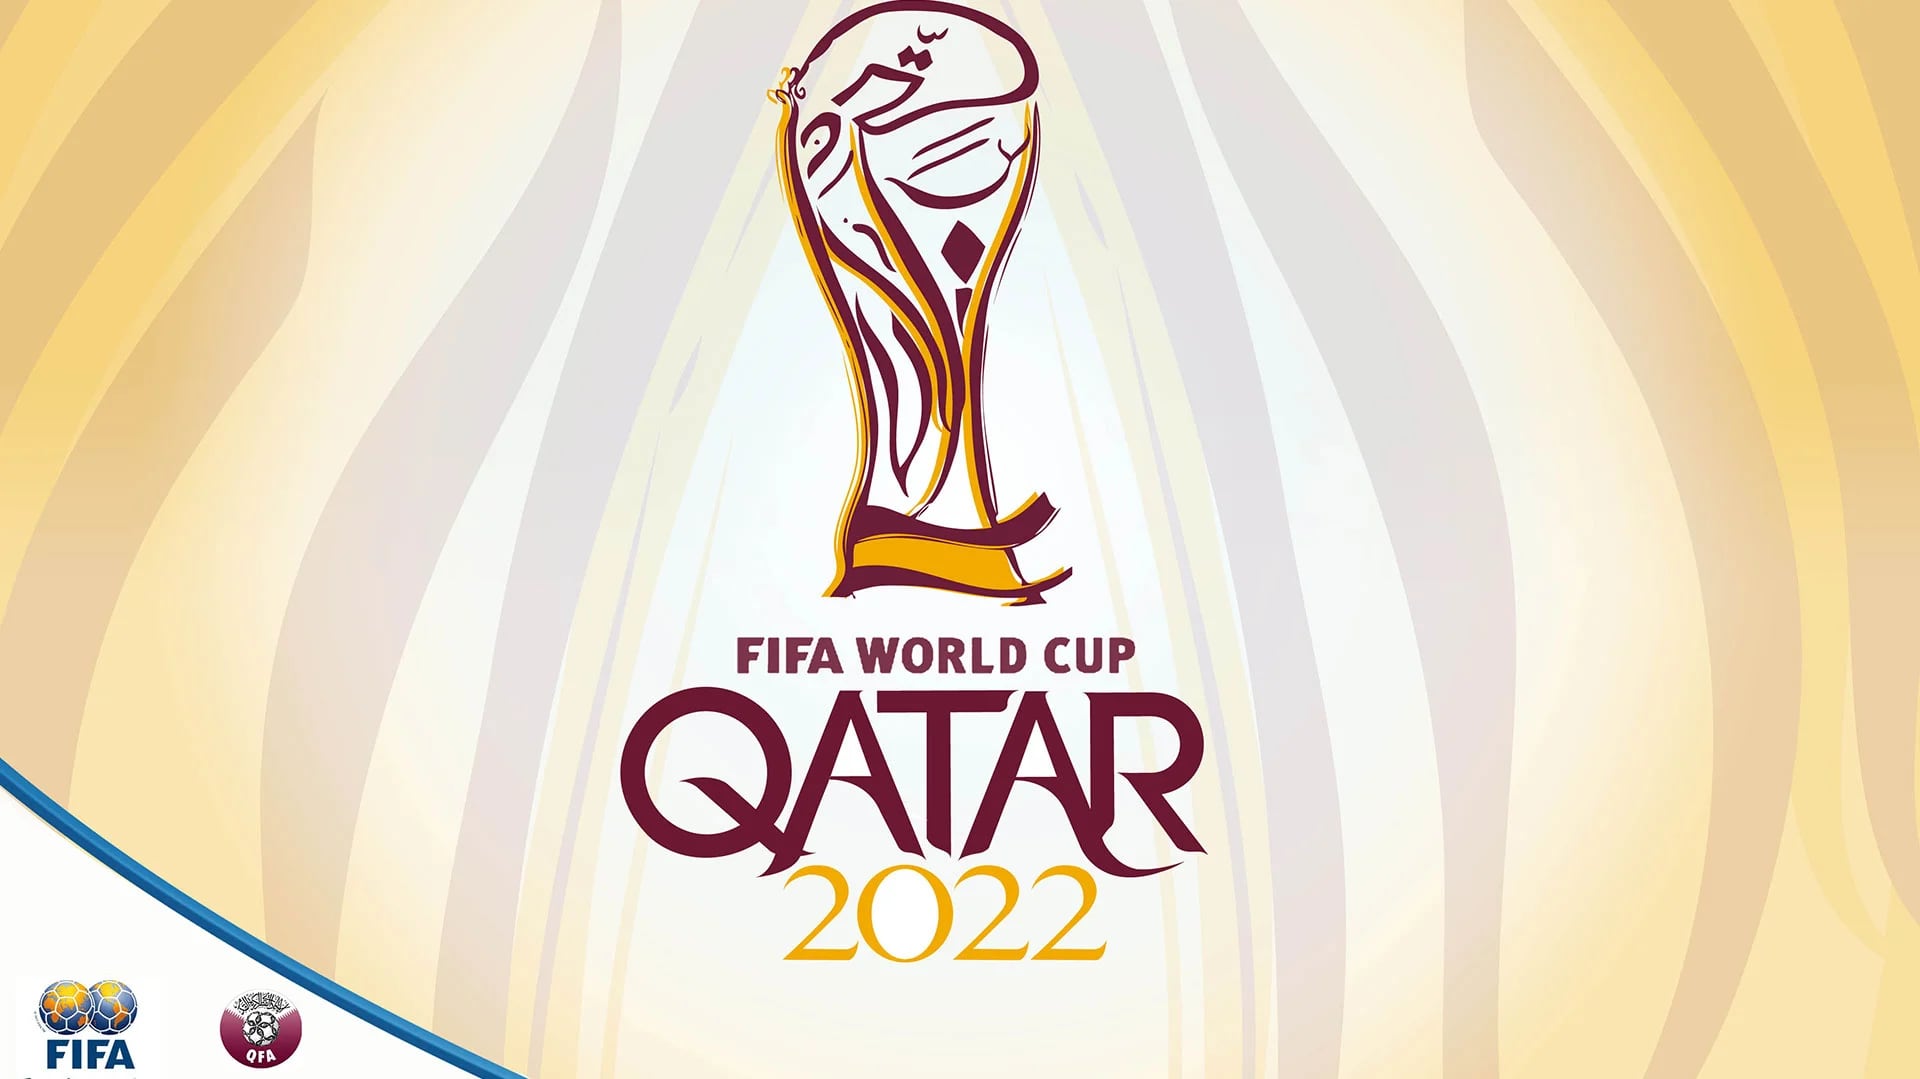 El Mundial de Qatar 2022 será compacto: se jugará del 21 de noviembre al 18 diciembre - Infobae